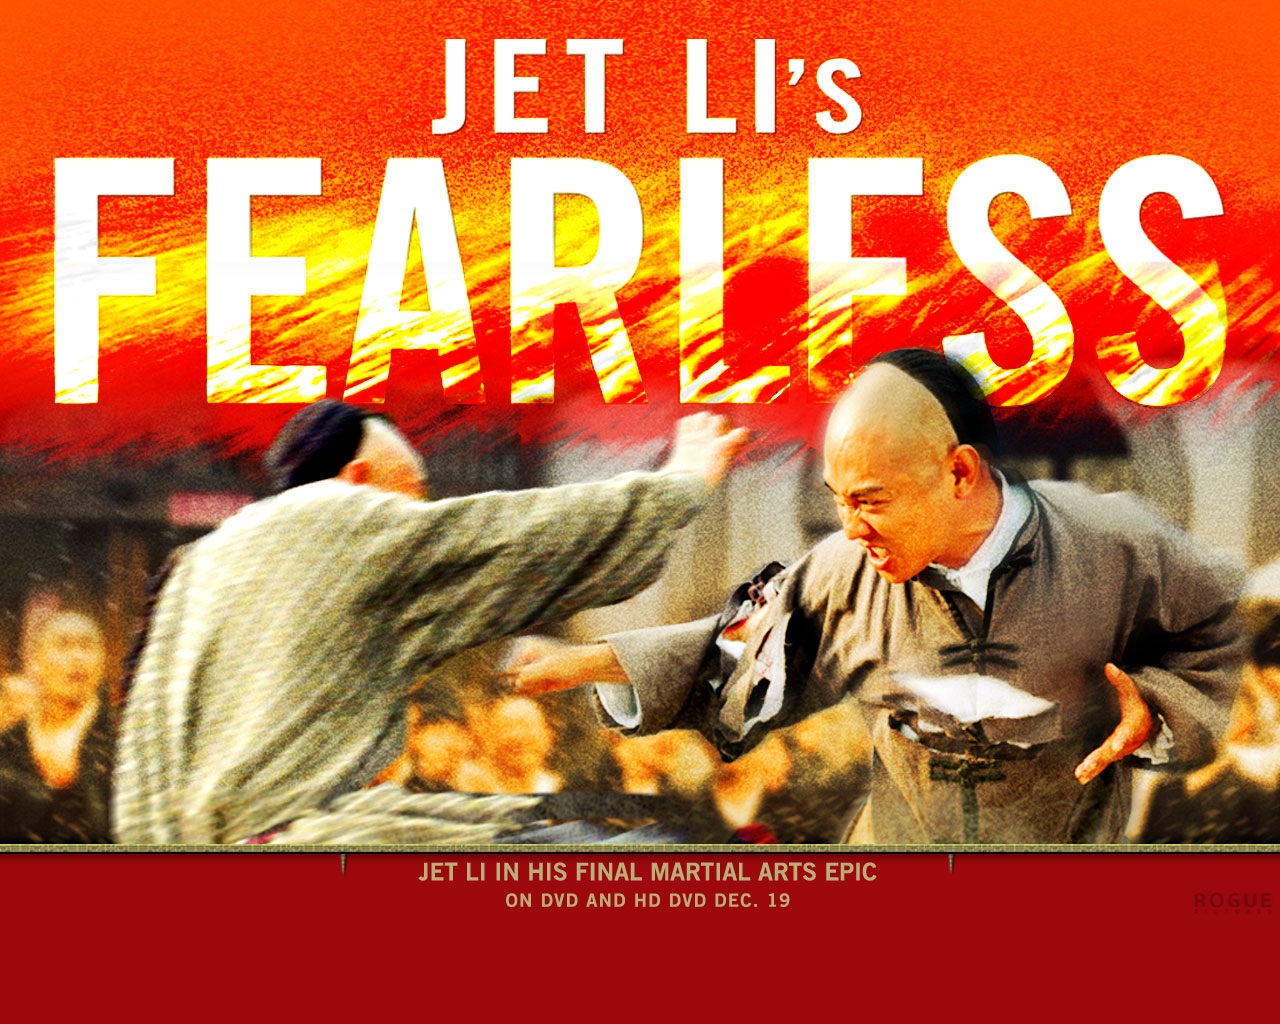 Huo Yuan Jia (aka Fearless)